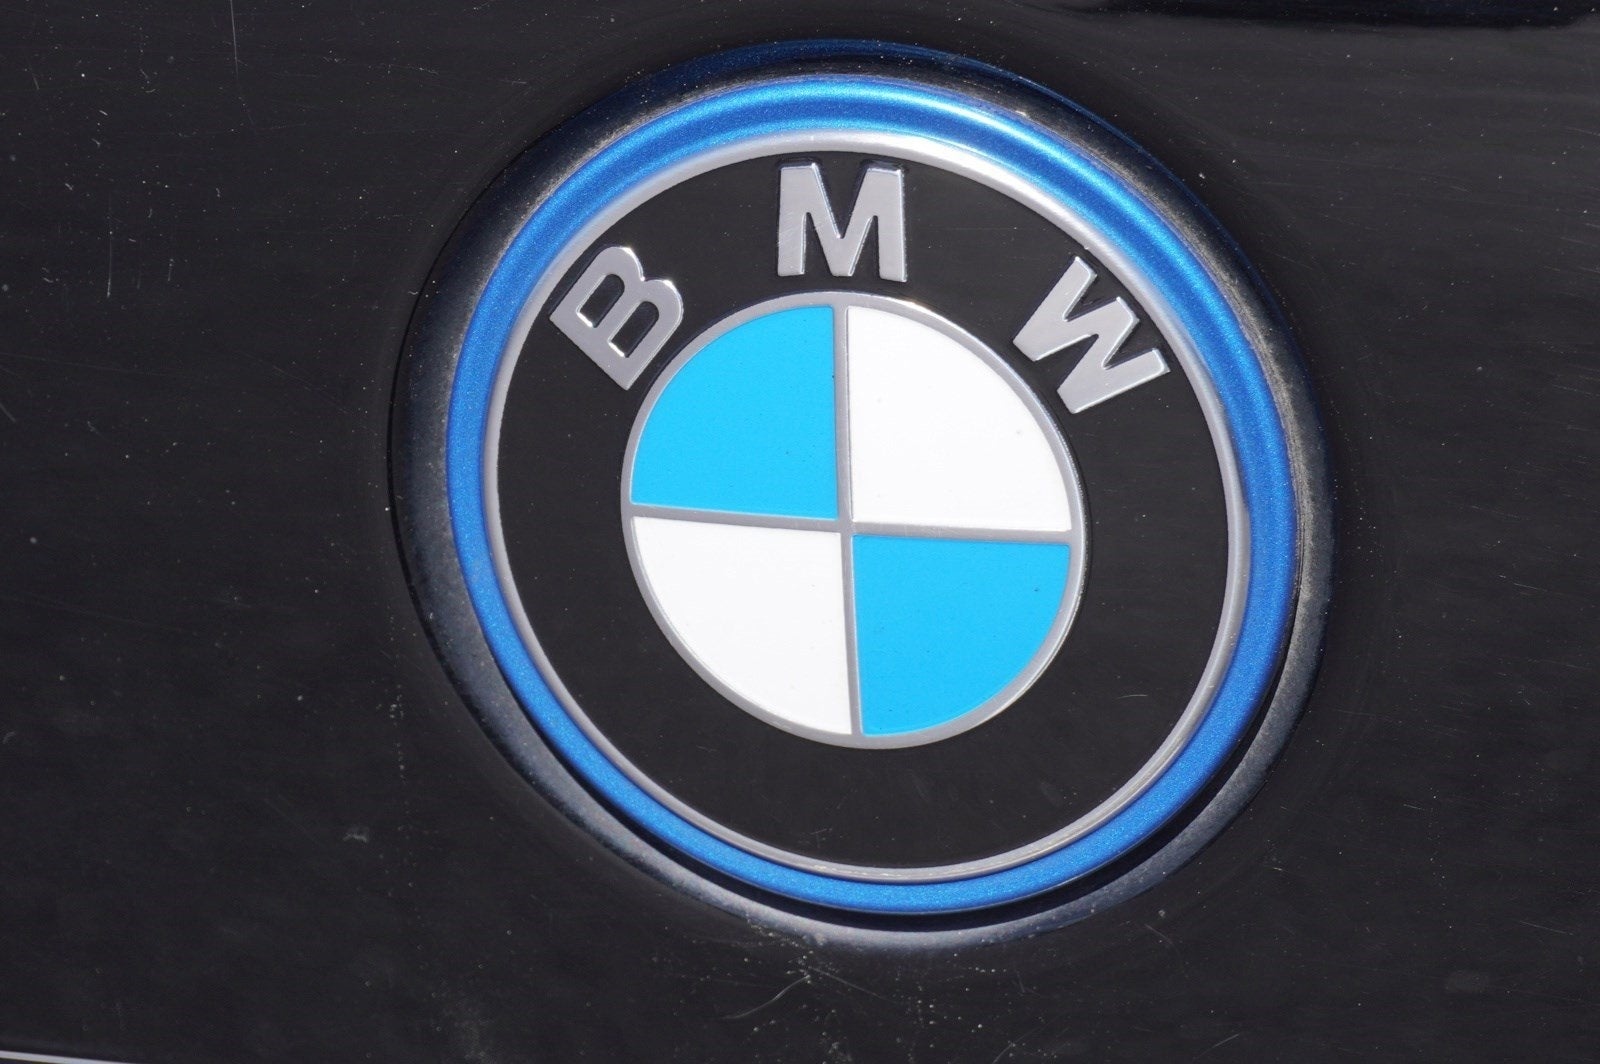 2023 BMW X5 PHEV xDrive45e